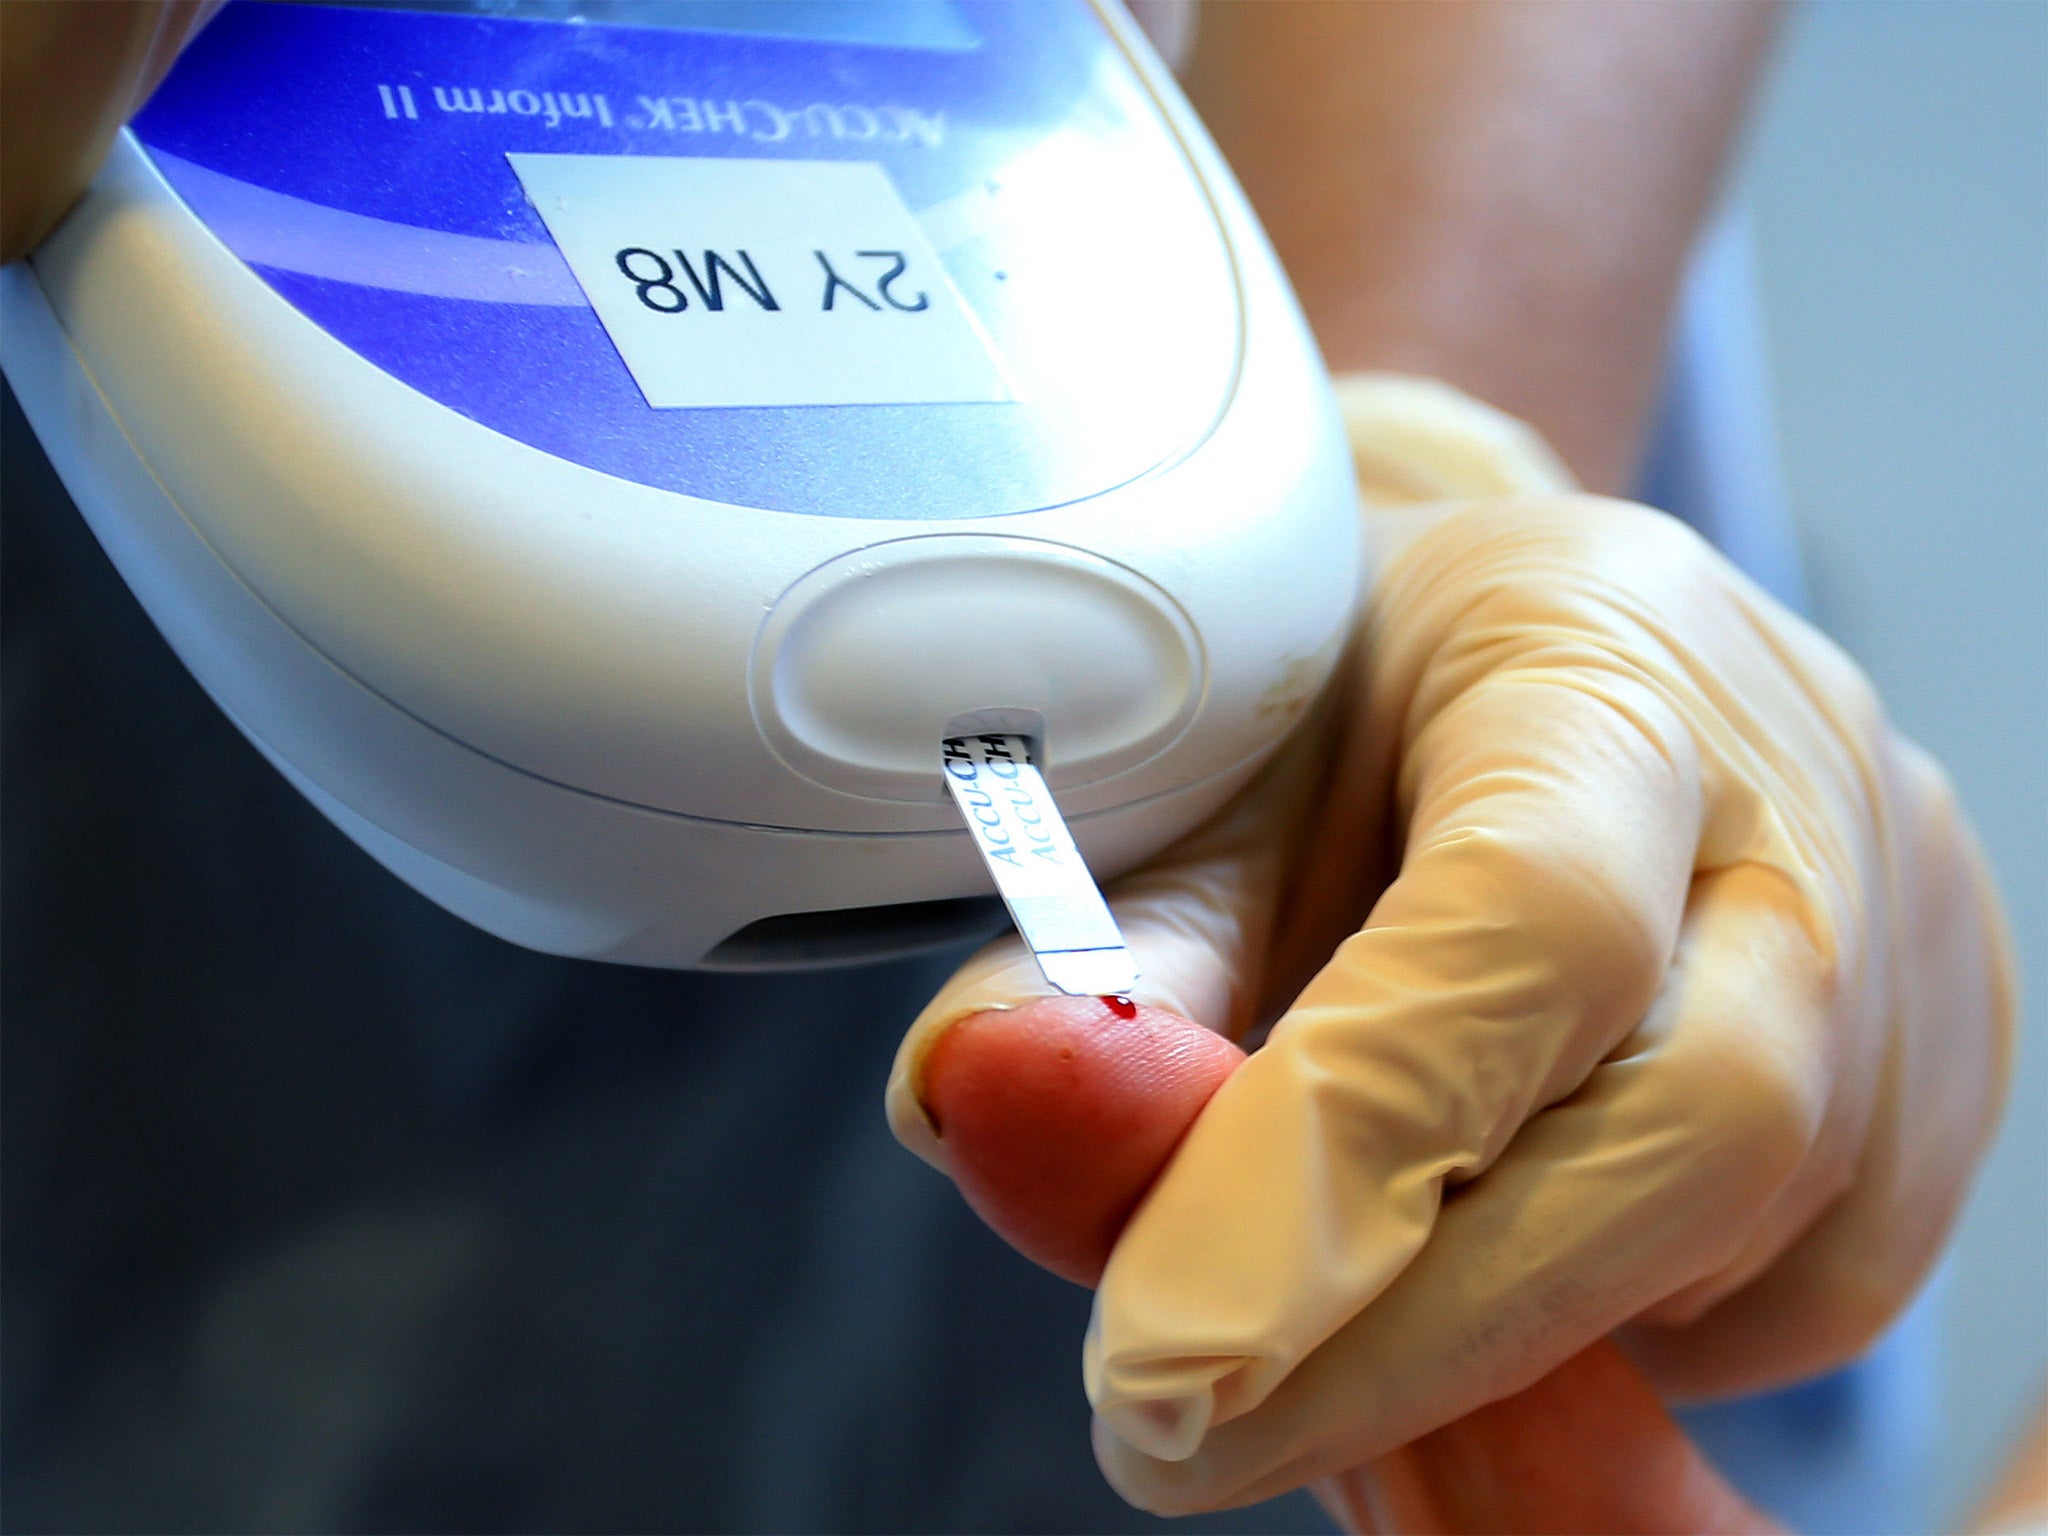 A nurse gives a patient a diabetes test